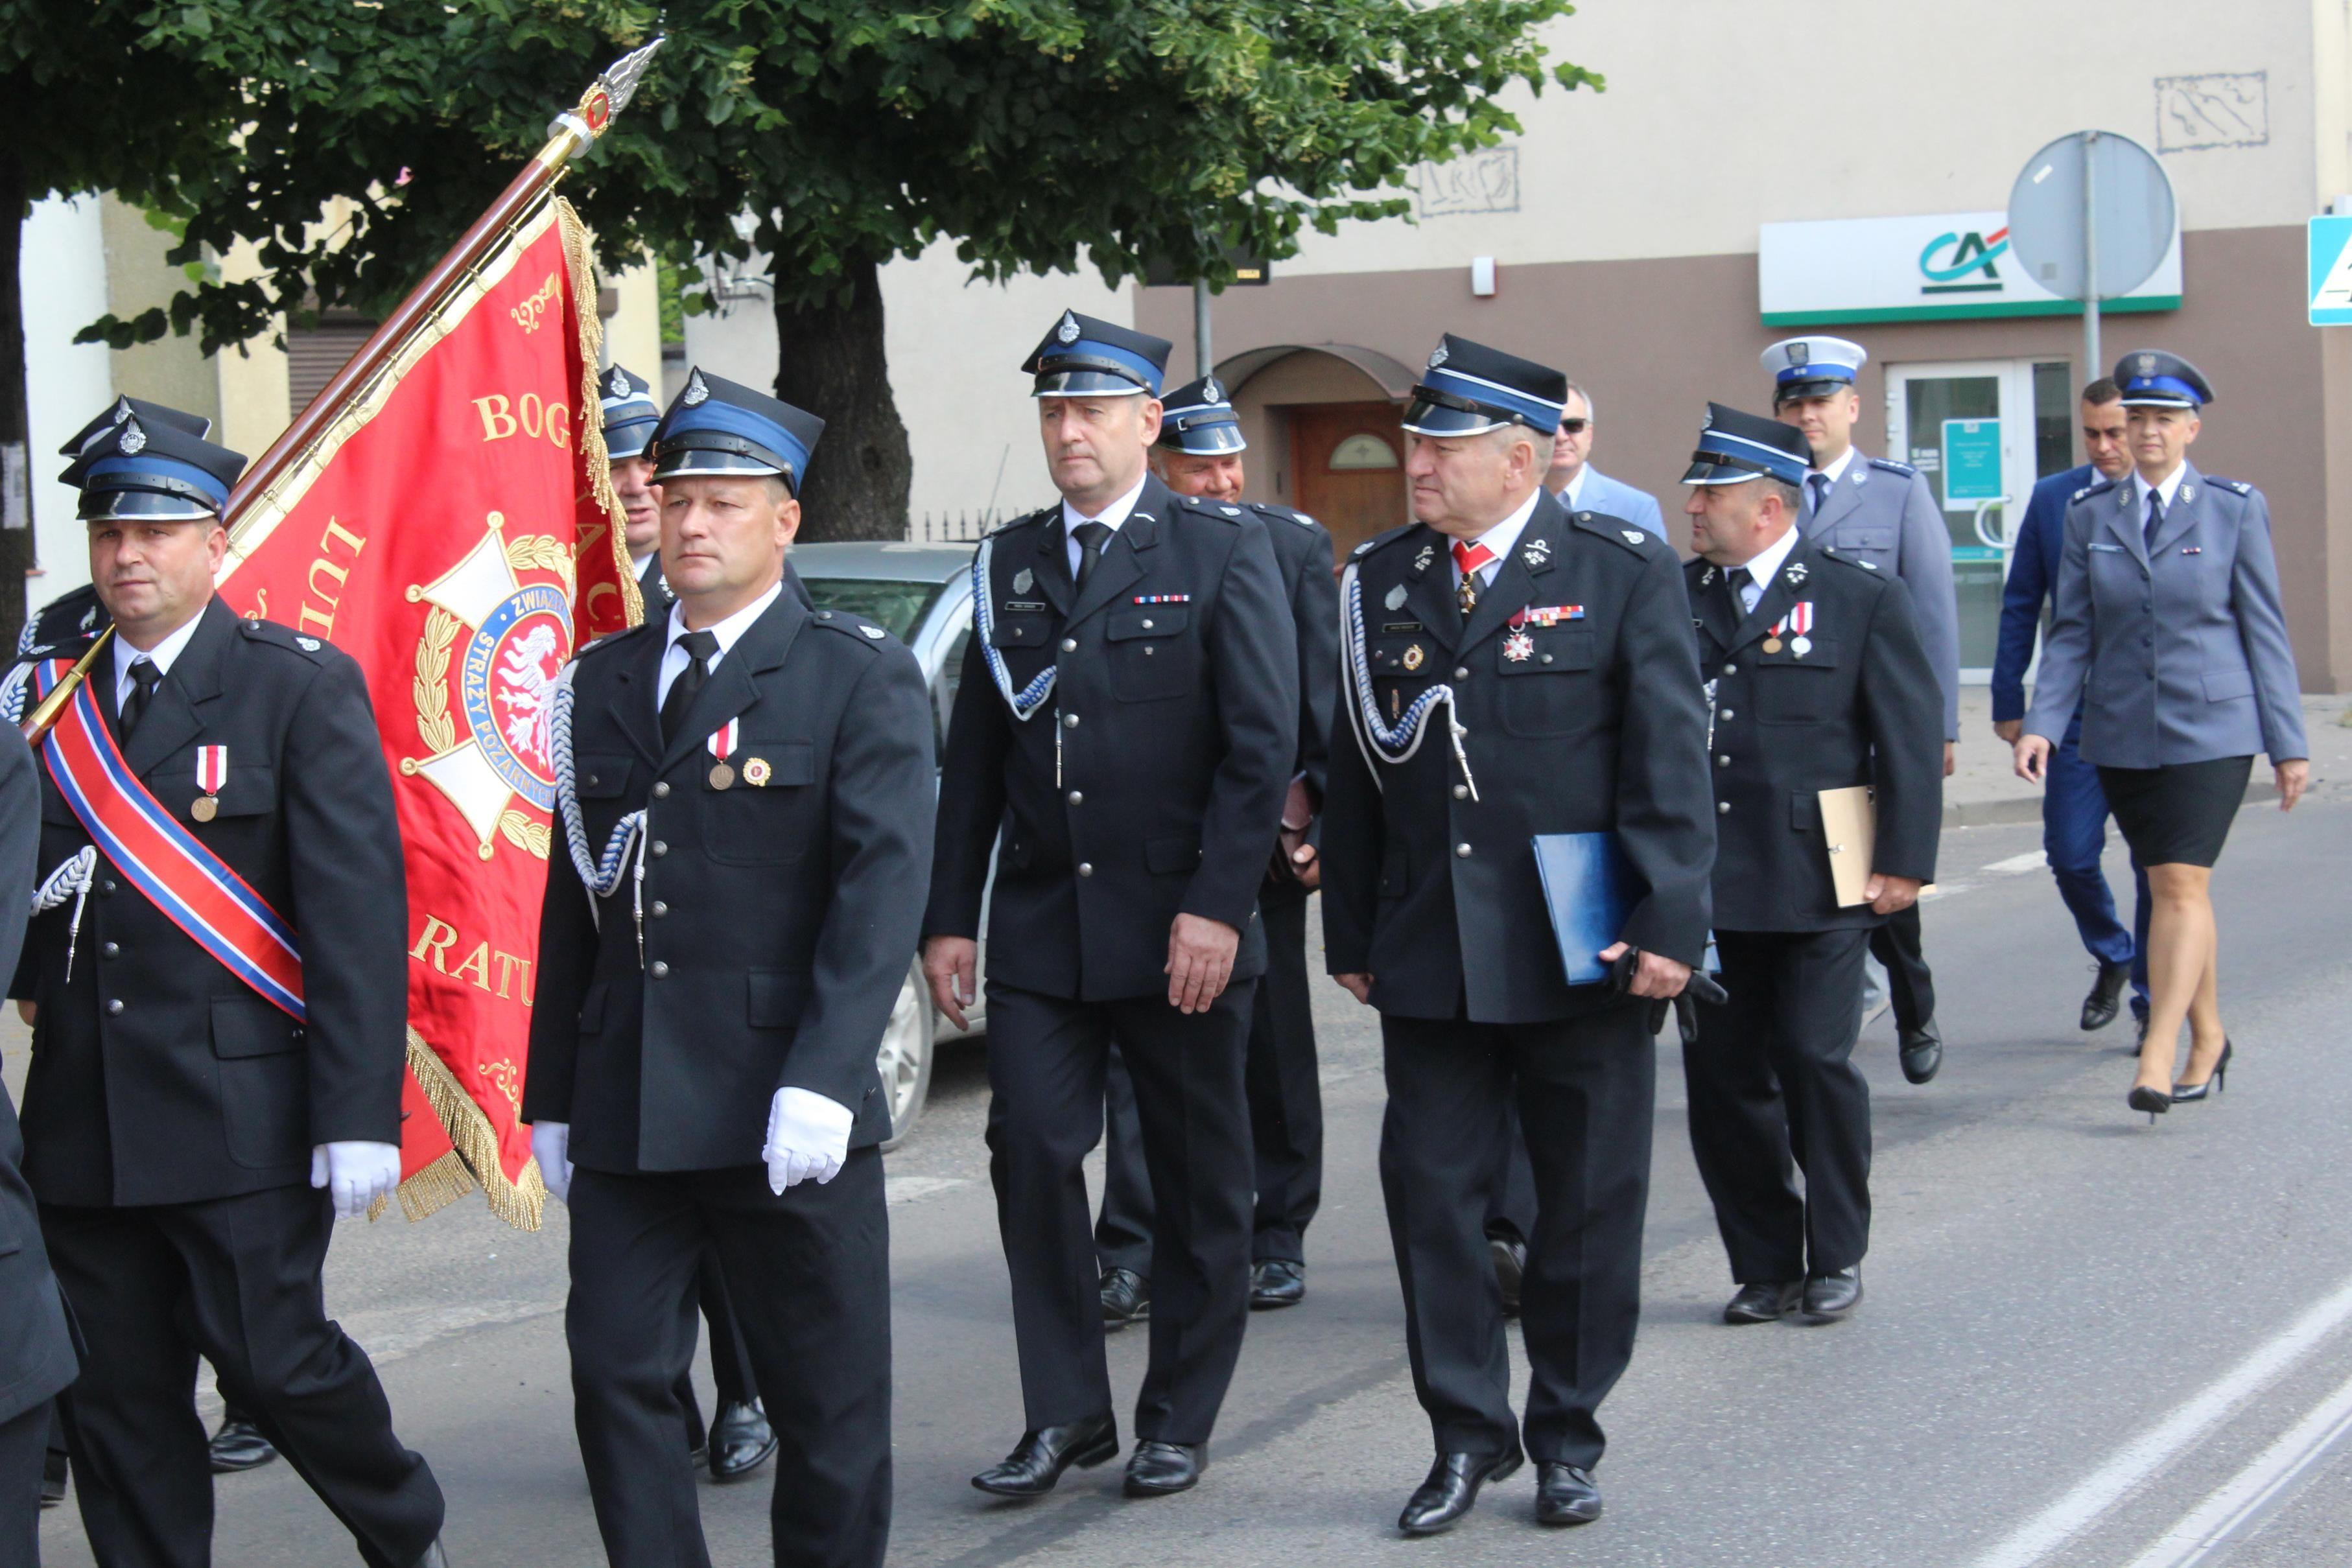 Zdj. nr. 14. Jubileusz 140-lecia Ochotniczej Straży Pożarnej w Lipnie - 27 czerwca 2021 r.